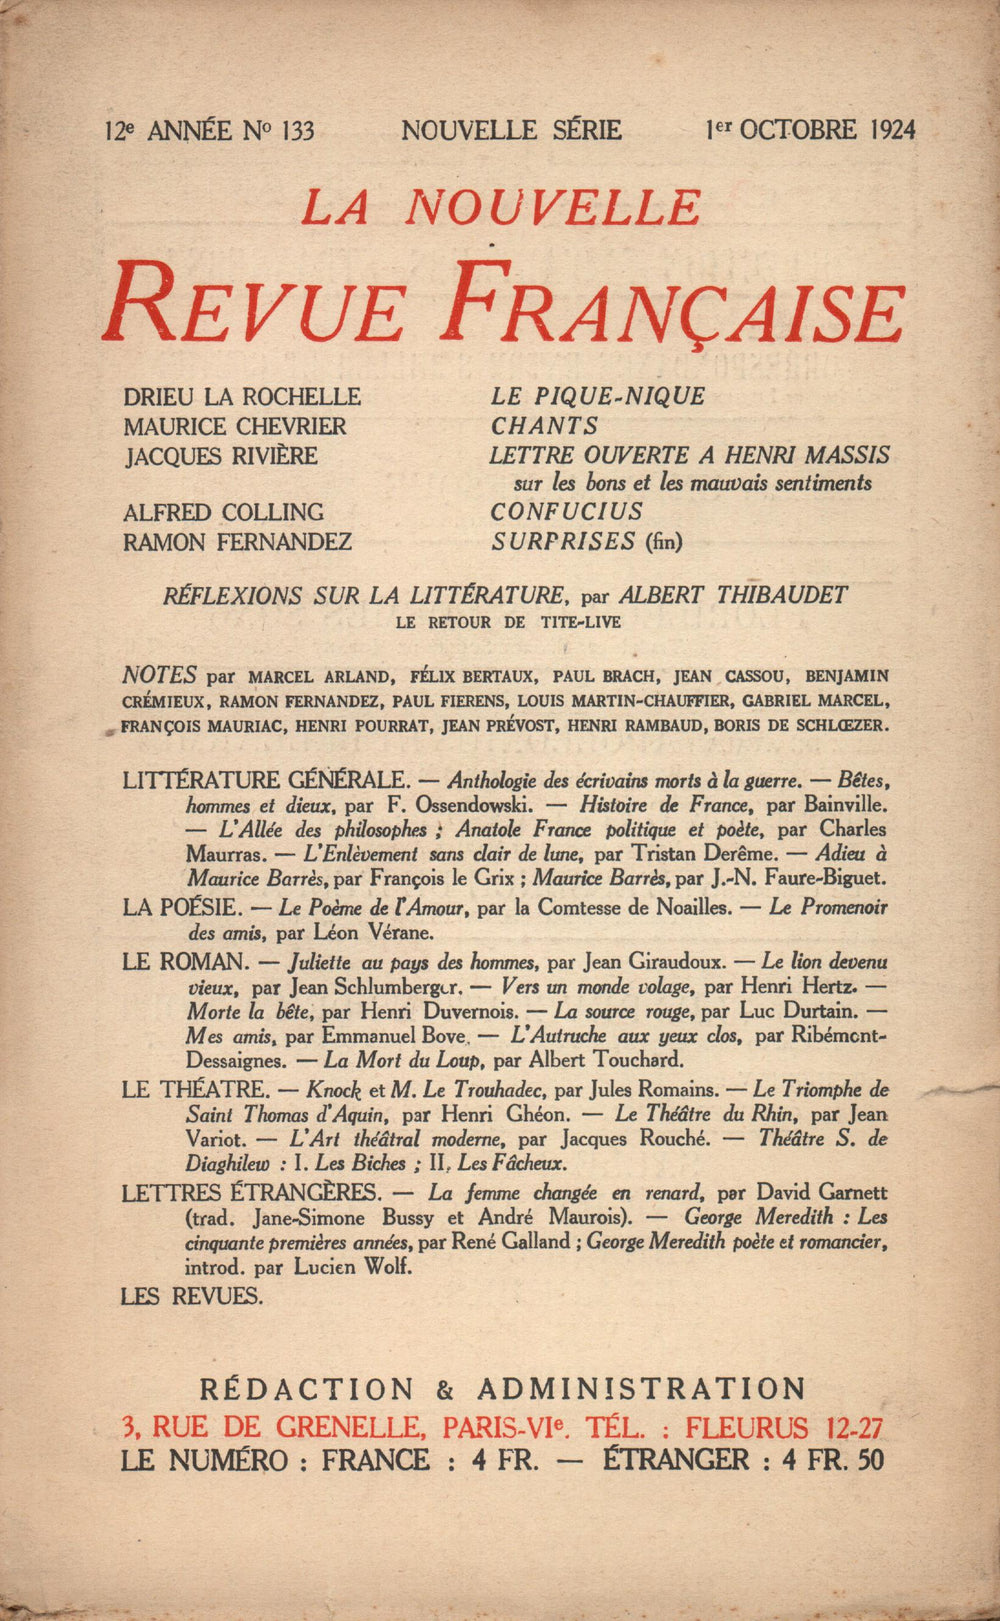 La Nouvelle Revue Française N' 133 (Octobre 1924)